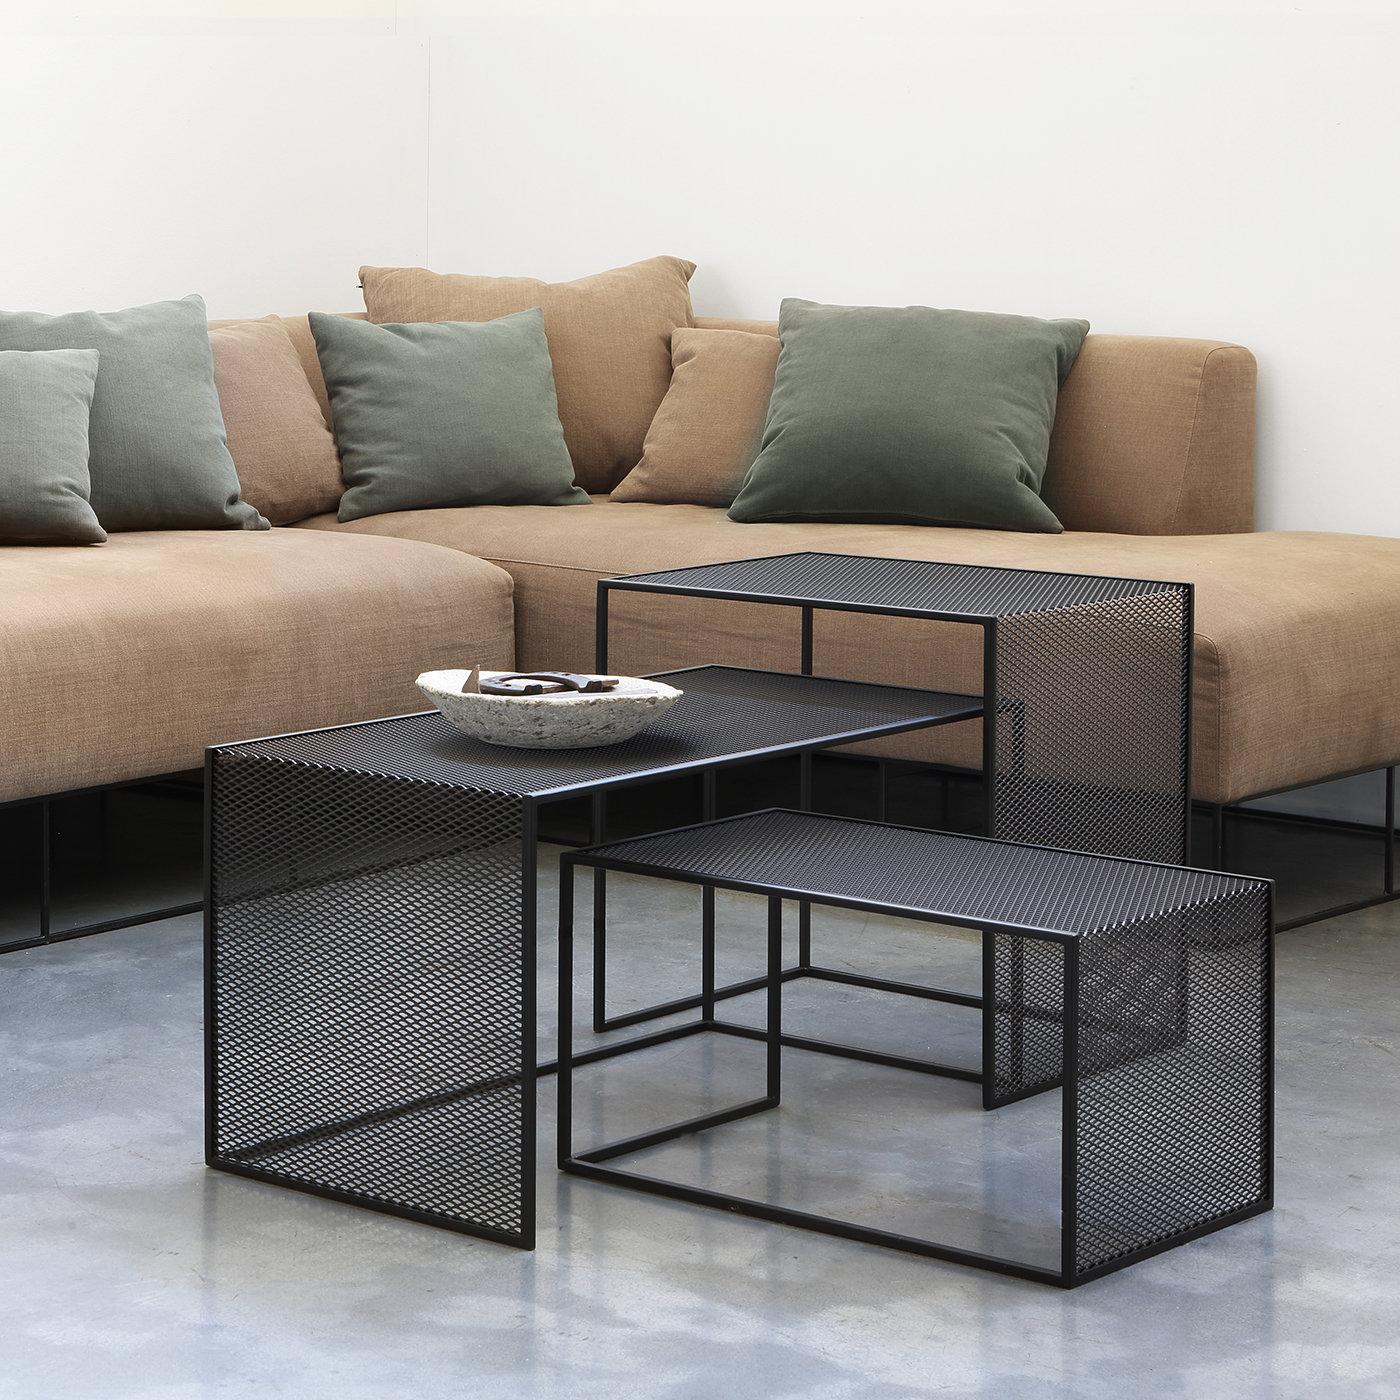 Die Tristano Low Tables sind hochfunktional und originell im Design. Sie bestehen aus einem Gestell aus massivem 10 x 10 mm Stahlrohr und einer Platte und Seiten aus Streckmetall. Die Komposition aus drei unterschiedlich großen Tischen (40 x 80 x H